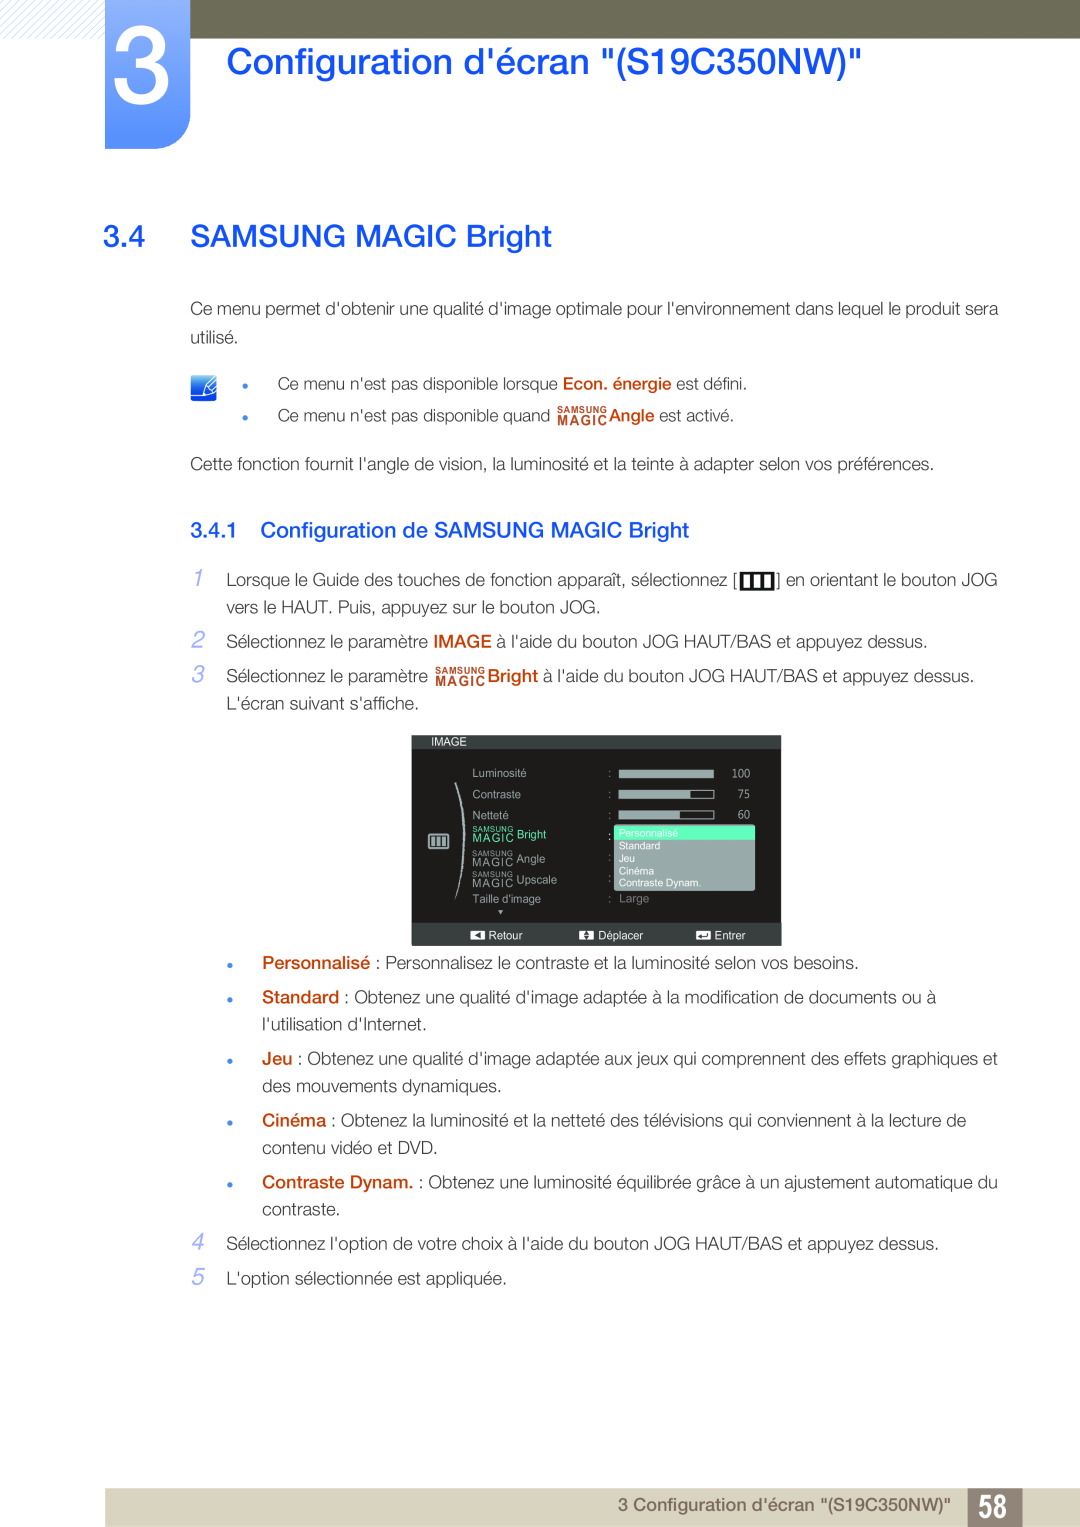 Samsung LS27C350HS/EN, LS22C350HS/EN manual Configuration de SAMSUNG MAGIC Bright, Configuration décran S19C350NW 